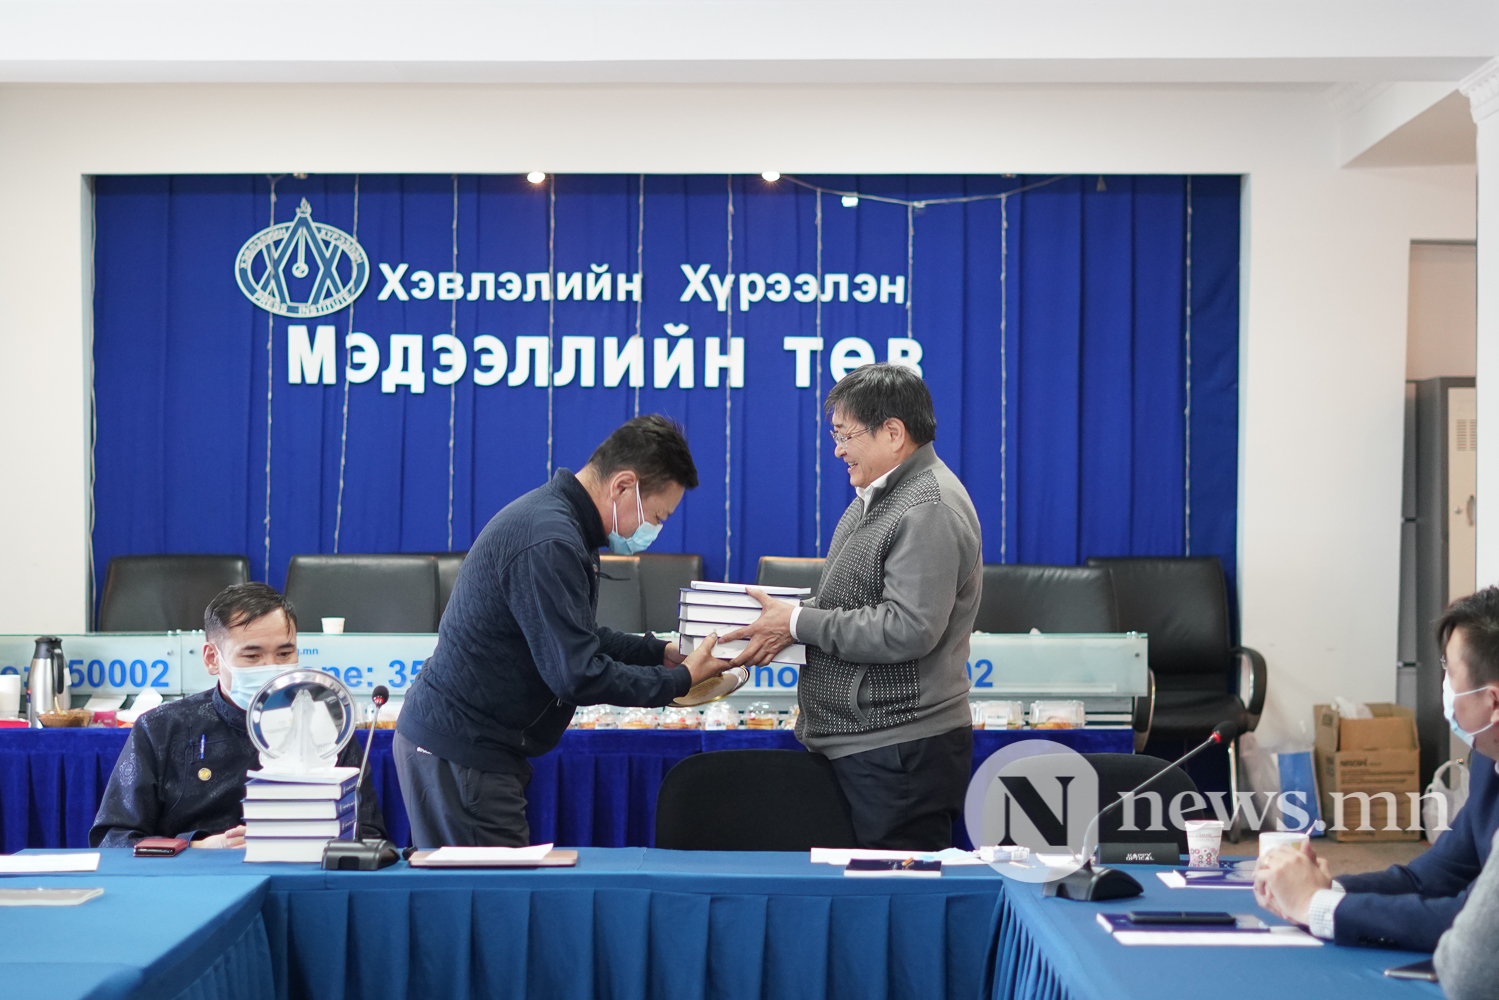 Монгол бичгийн үндэсний хөтөлбөрийг хэрэгжүүлэхэд хэвлэл мэдээллийн байгууллагуудын үүрэг, оролцоо (13 of 14)